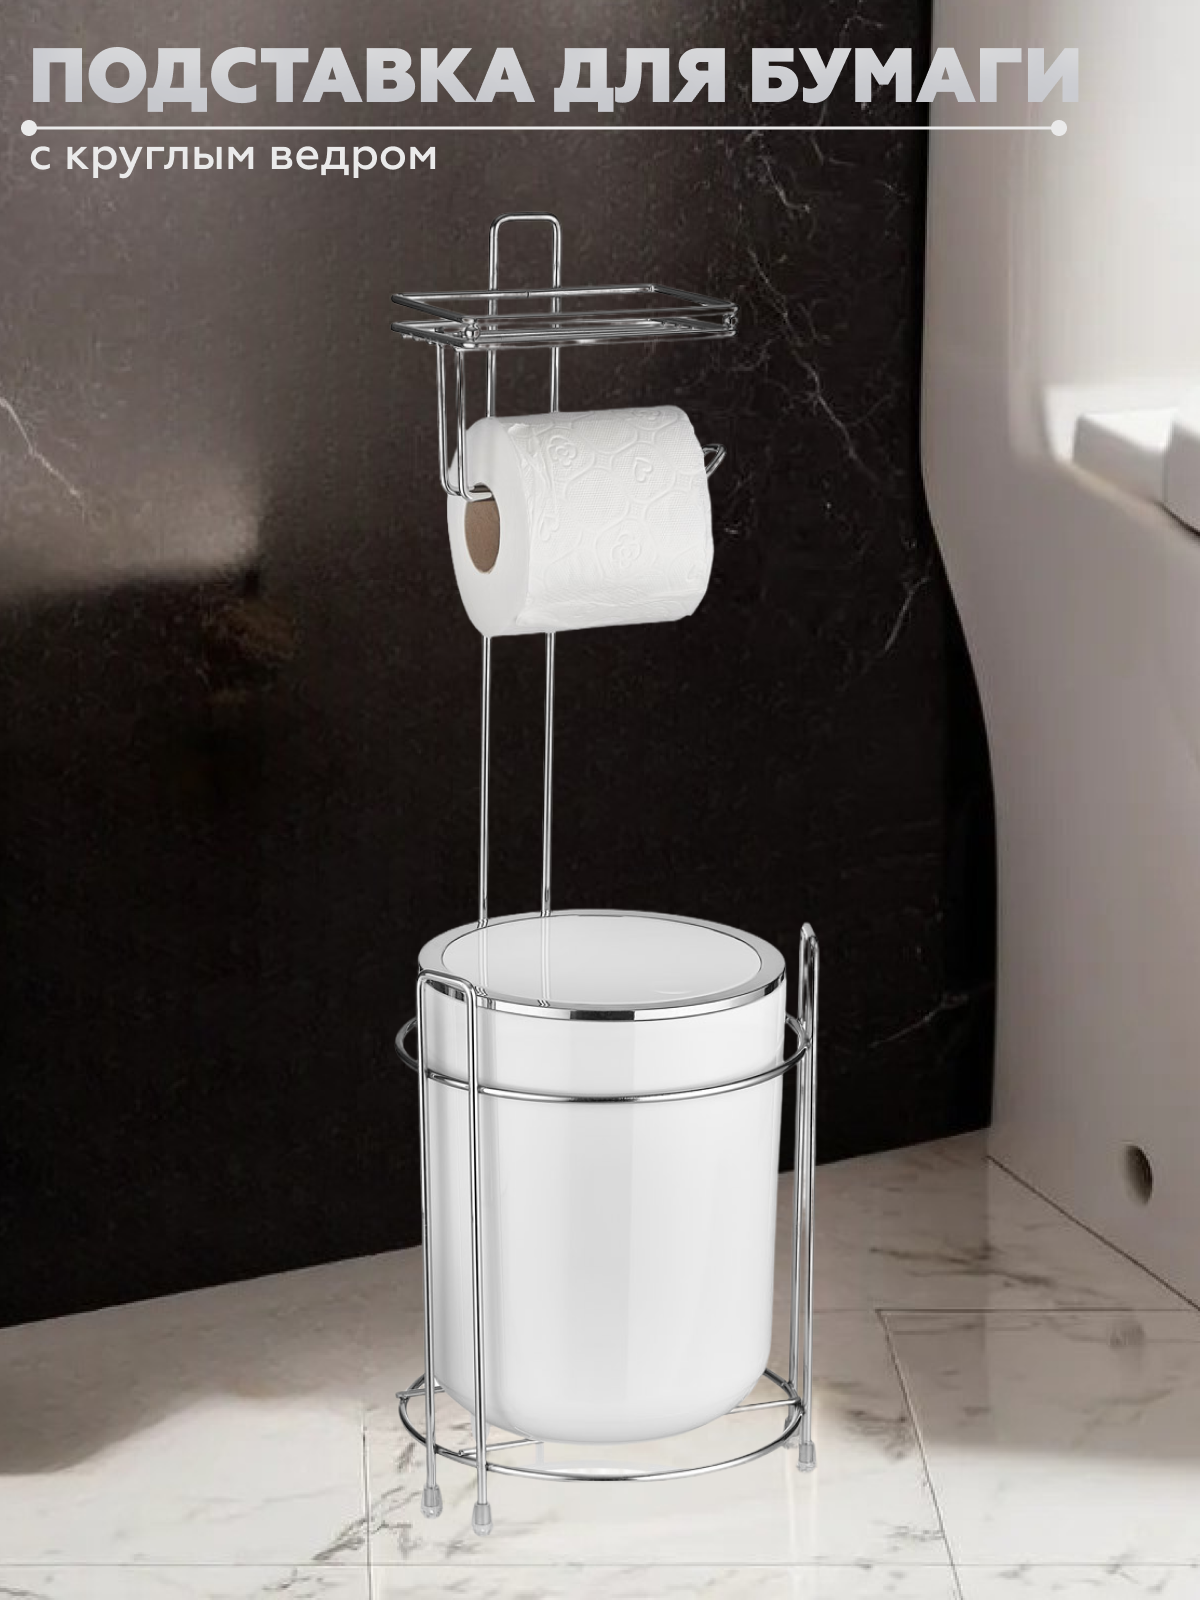 Держатель для туалетной бумаги Vialex с круглым ведром YB255-white